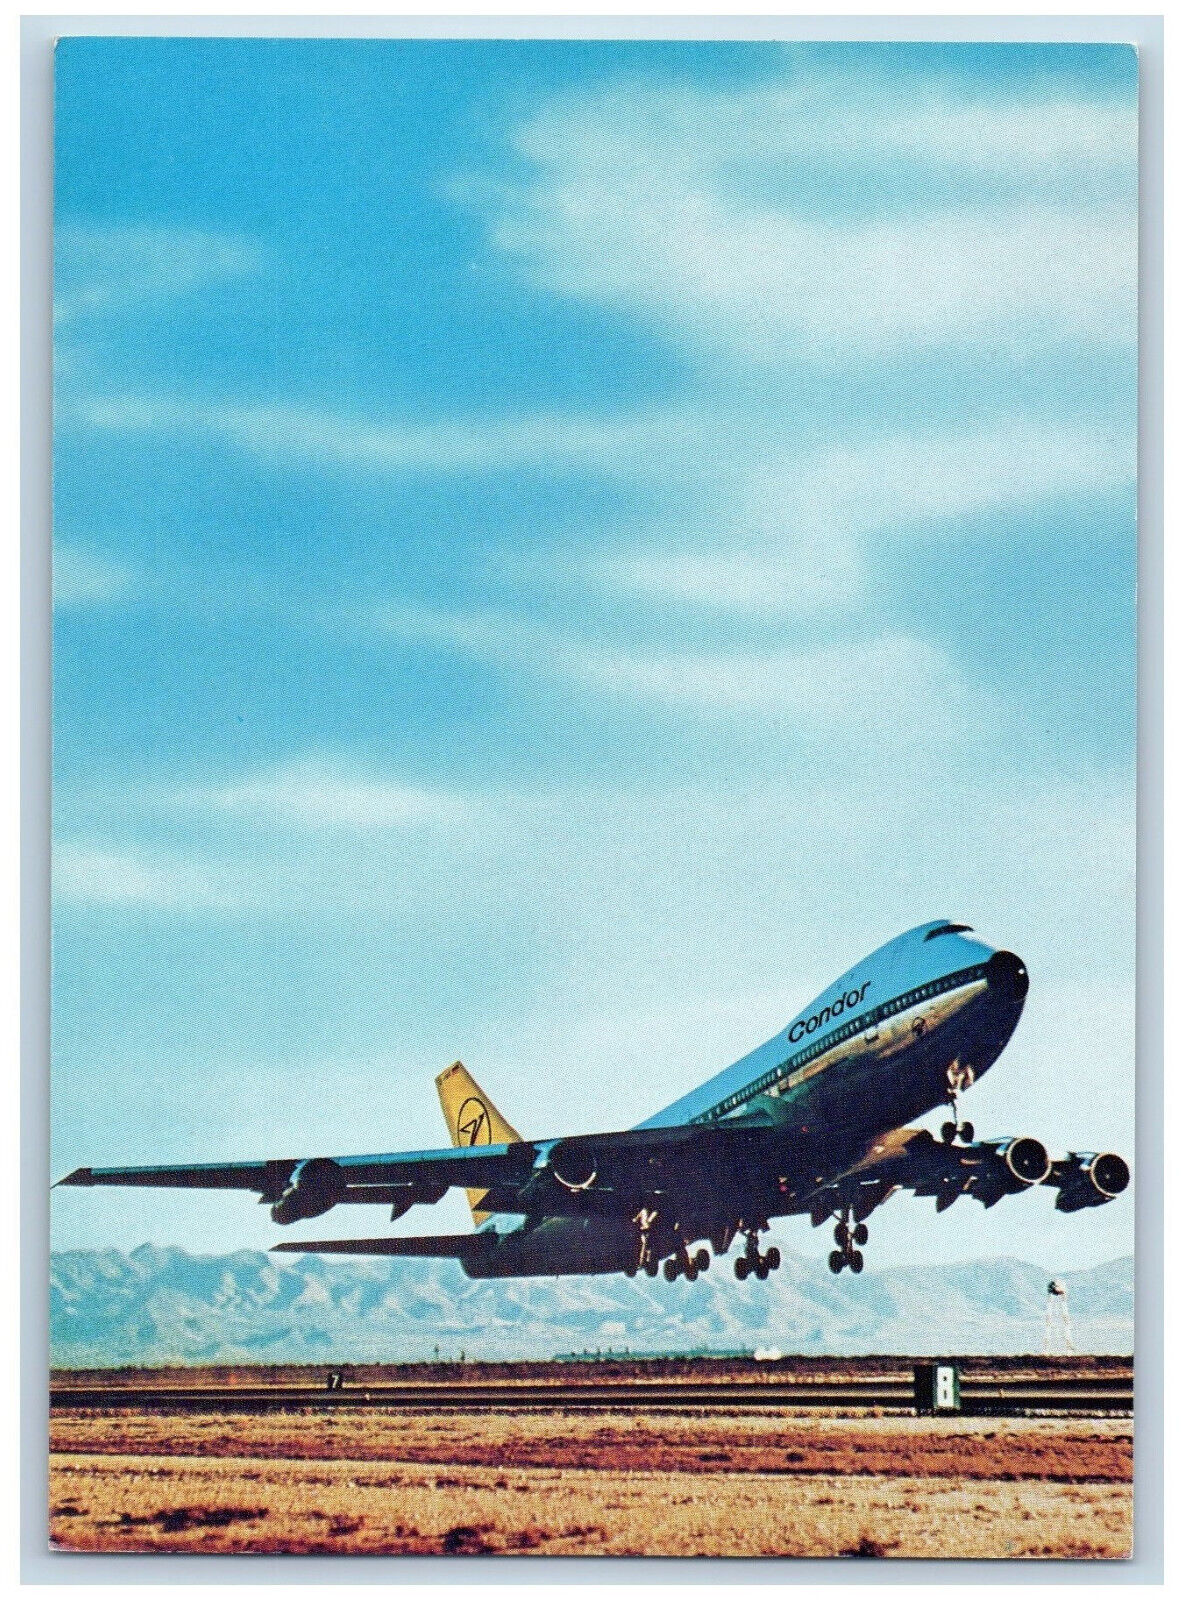 Gütersloh Germany Postcard Condor Jumbo-Jet Boeing 747 c1950's Vintage